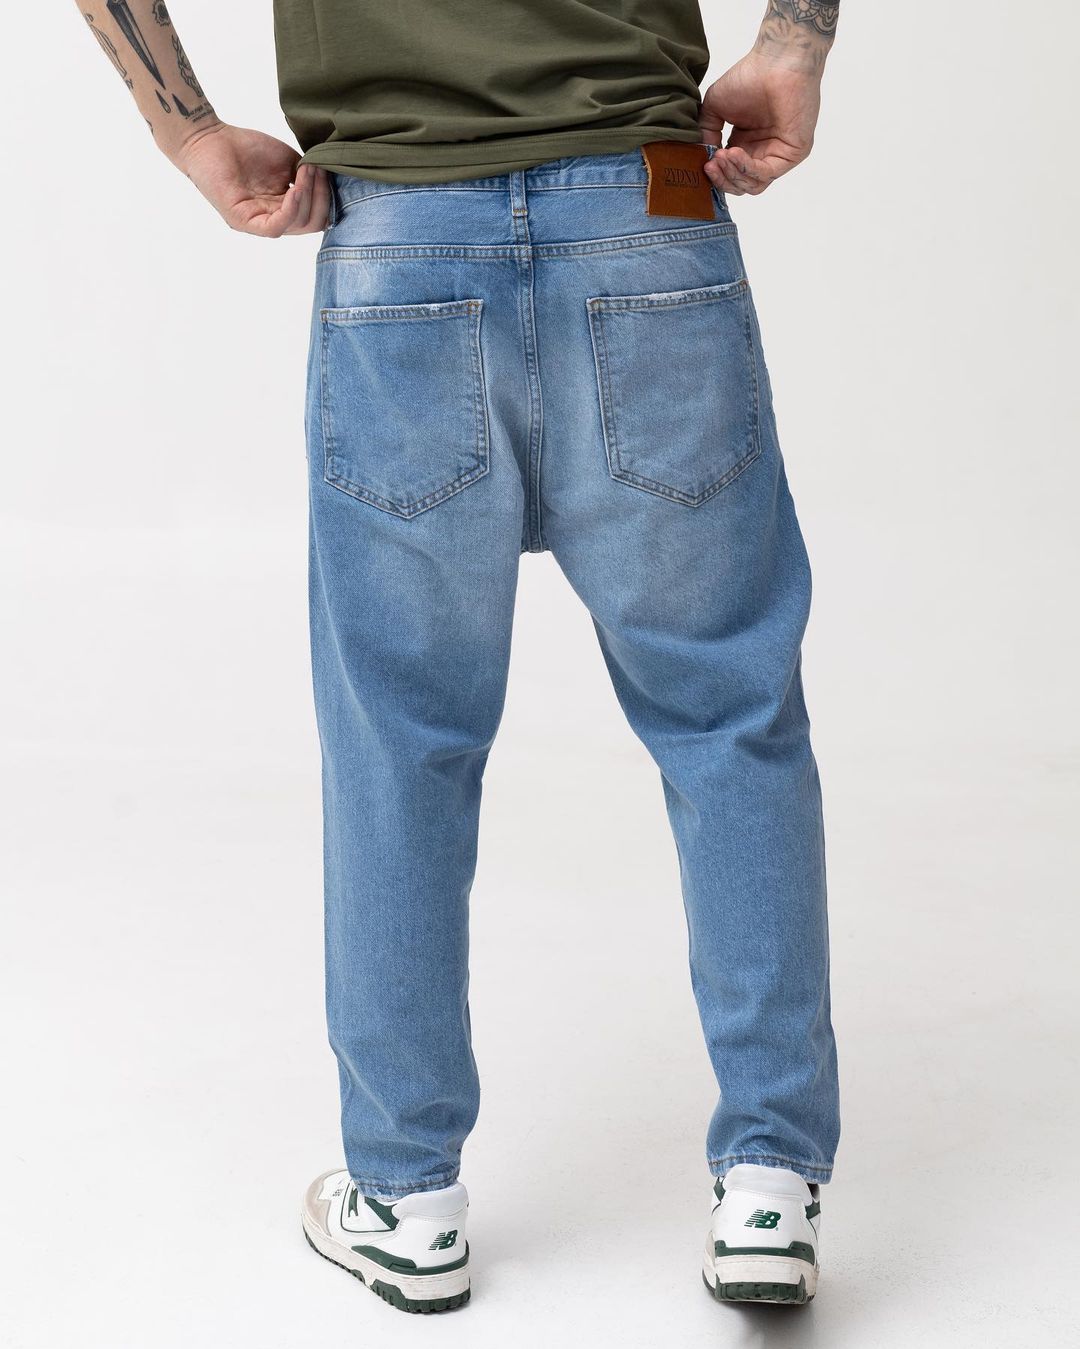 Чоловічі блакитні джинси BEZET базові з перфорацією - Фото 3